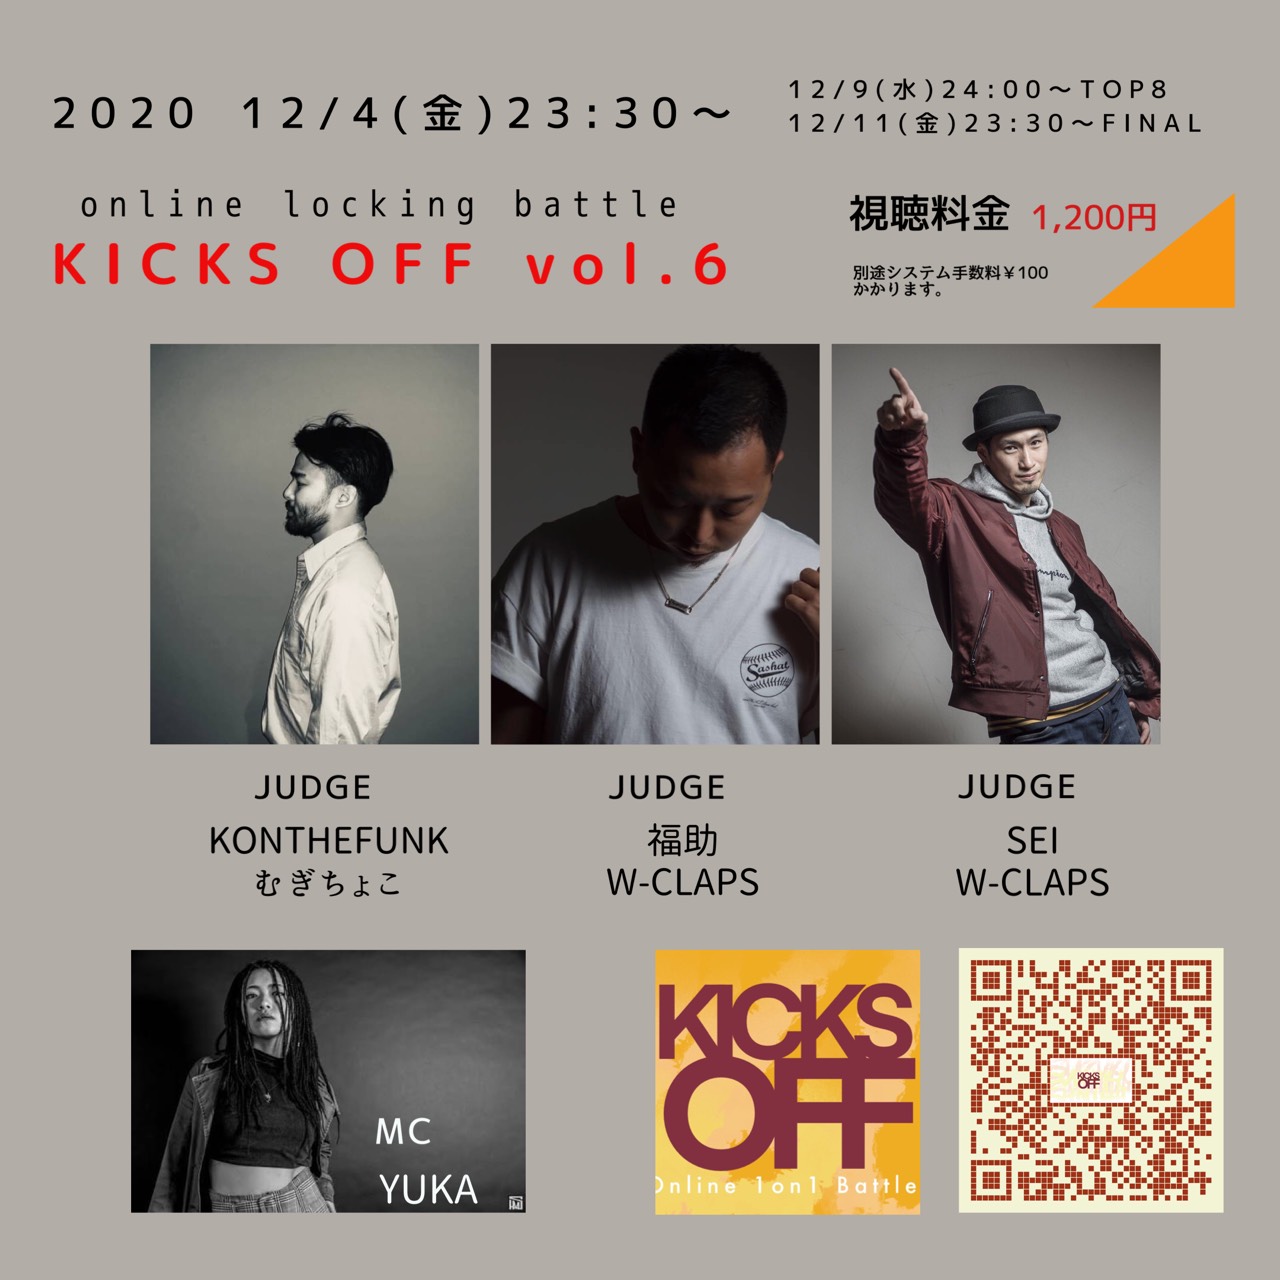 イベント Kicks Off Vol 6 渋谷のレンタルスタジオ ユニアス 渋谷駅徒歩1分 500円 ダンスやヨガで使える格安スタジオ